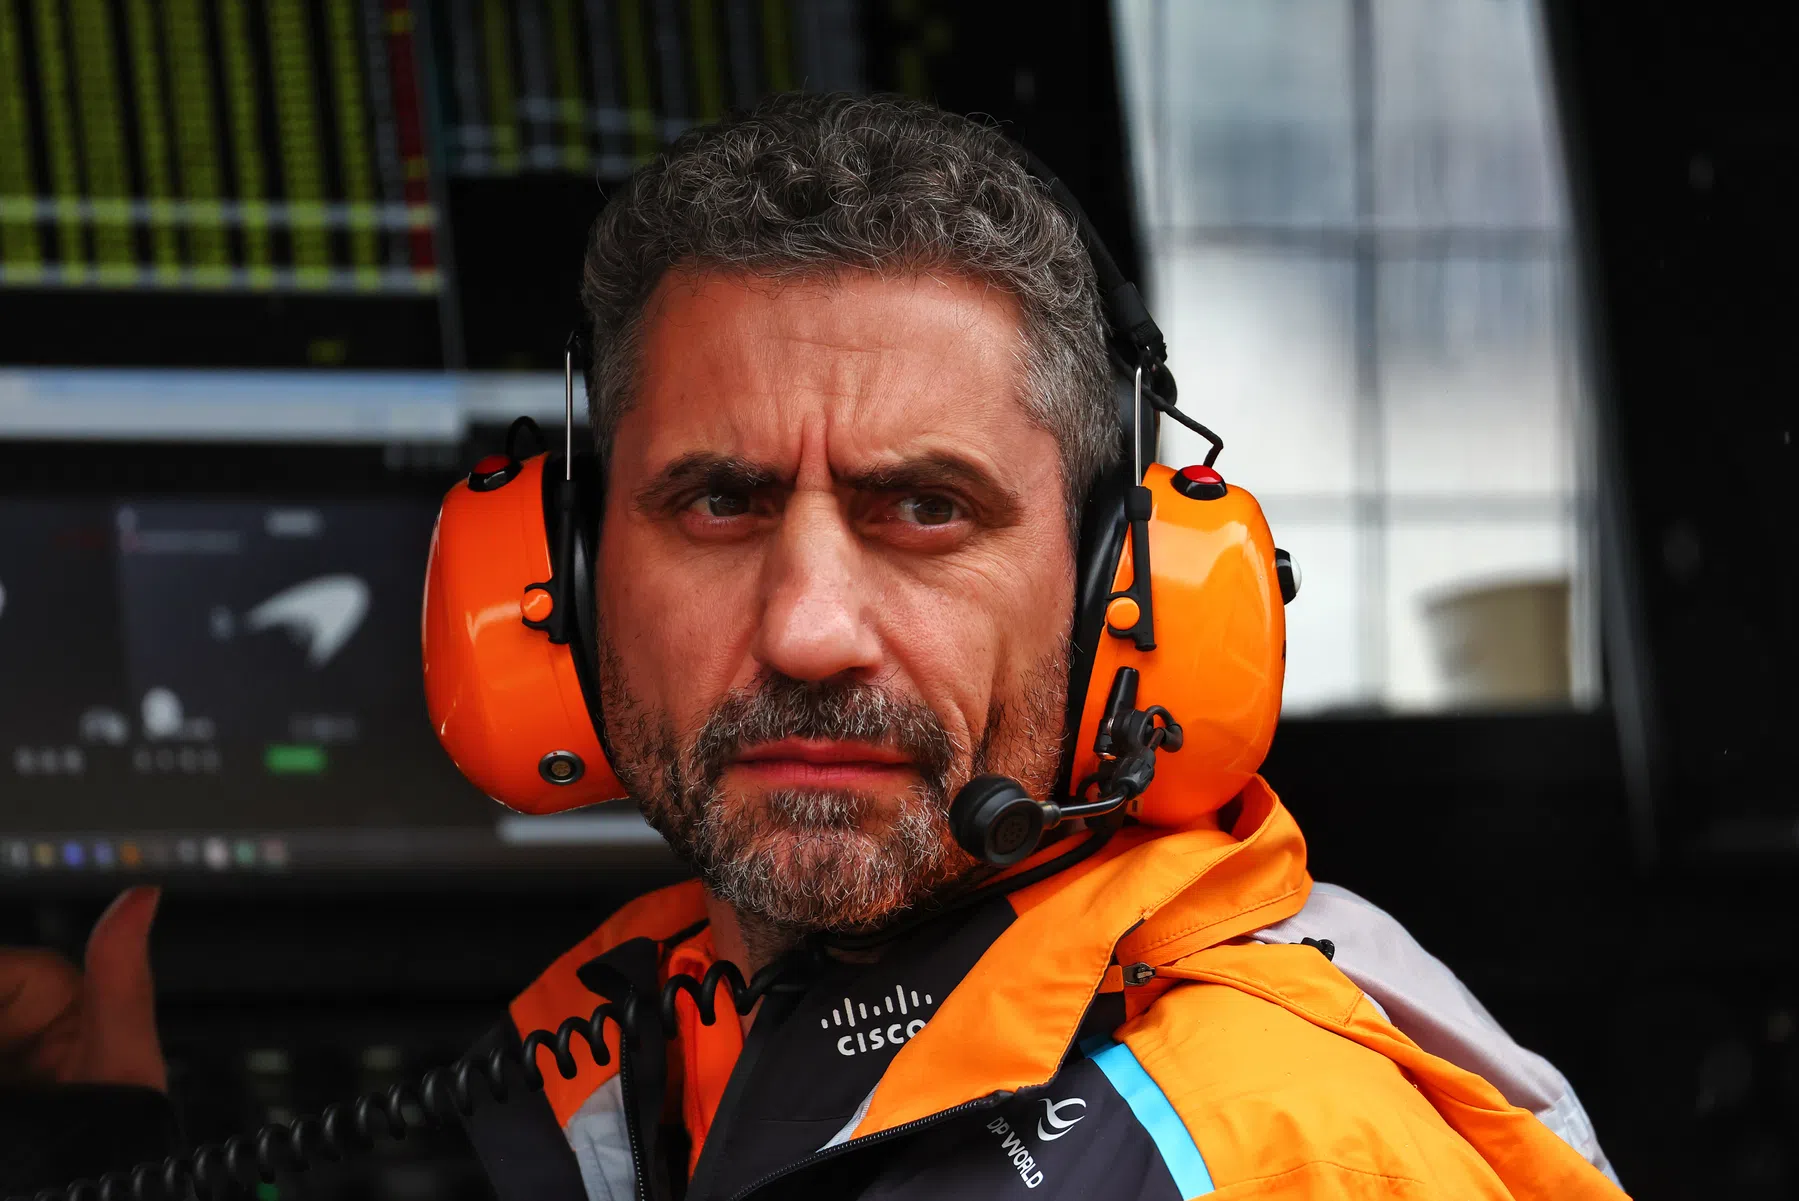 La McLaren fa ricorso contro i risultati delle qualifiche del Gran Premio d'Austria